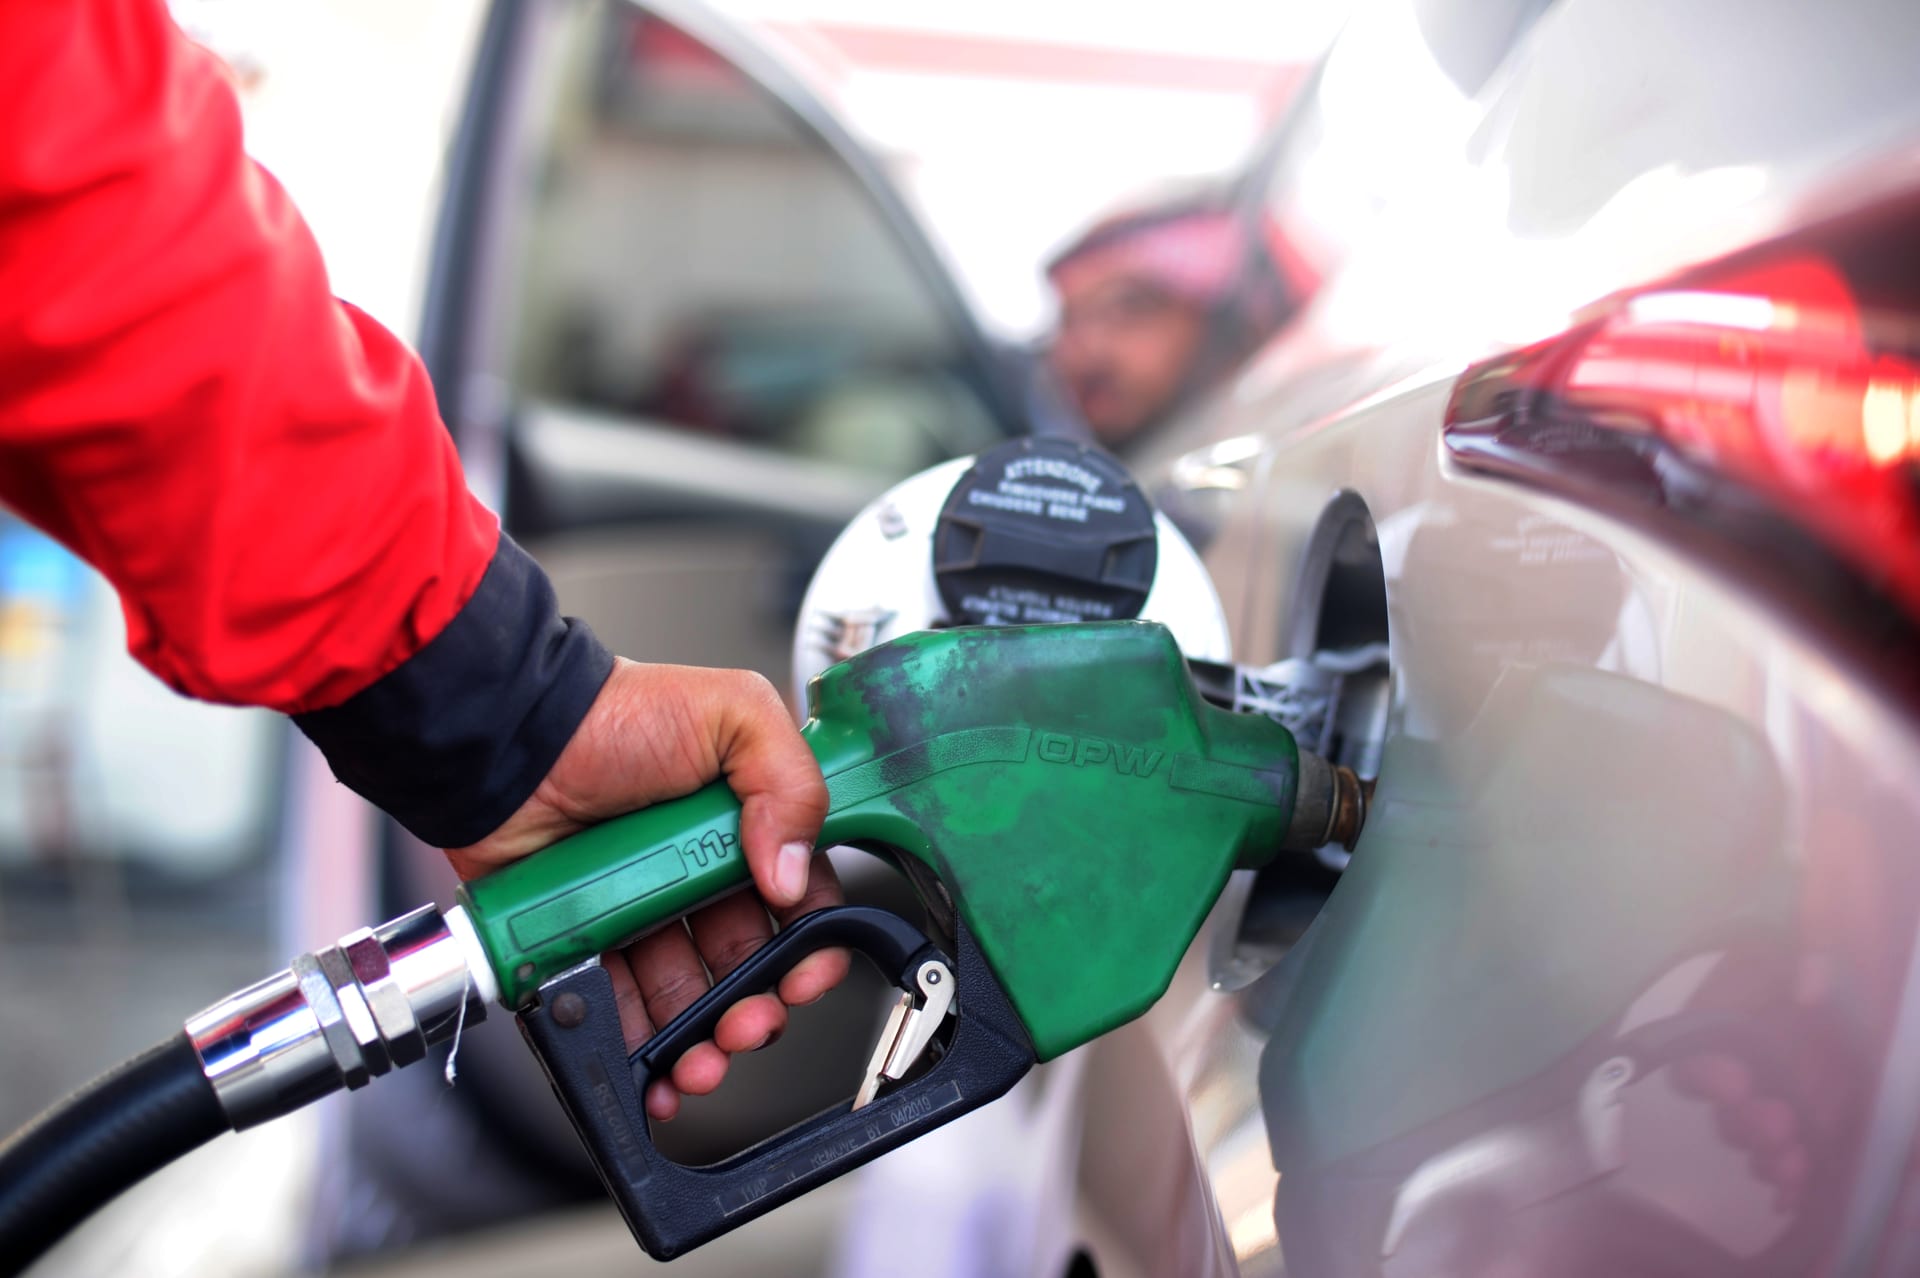 اسعار البنزين فى السعودية لشهر يوليو 2021 بعد تعريفة ارامكو الجديدة على اسعار البنزين في محطات الوقود